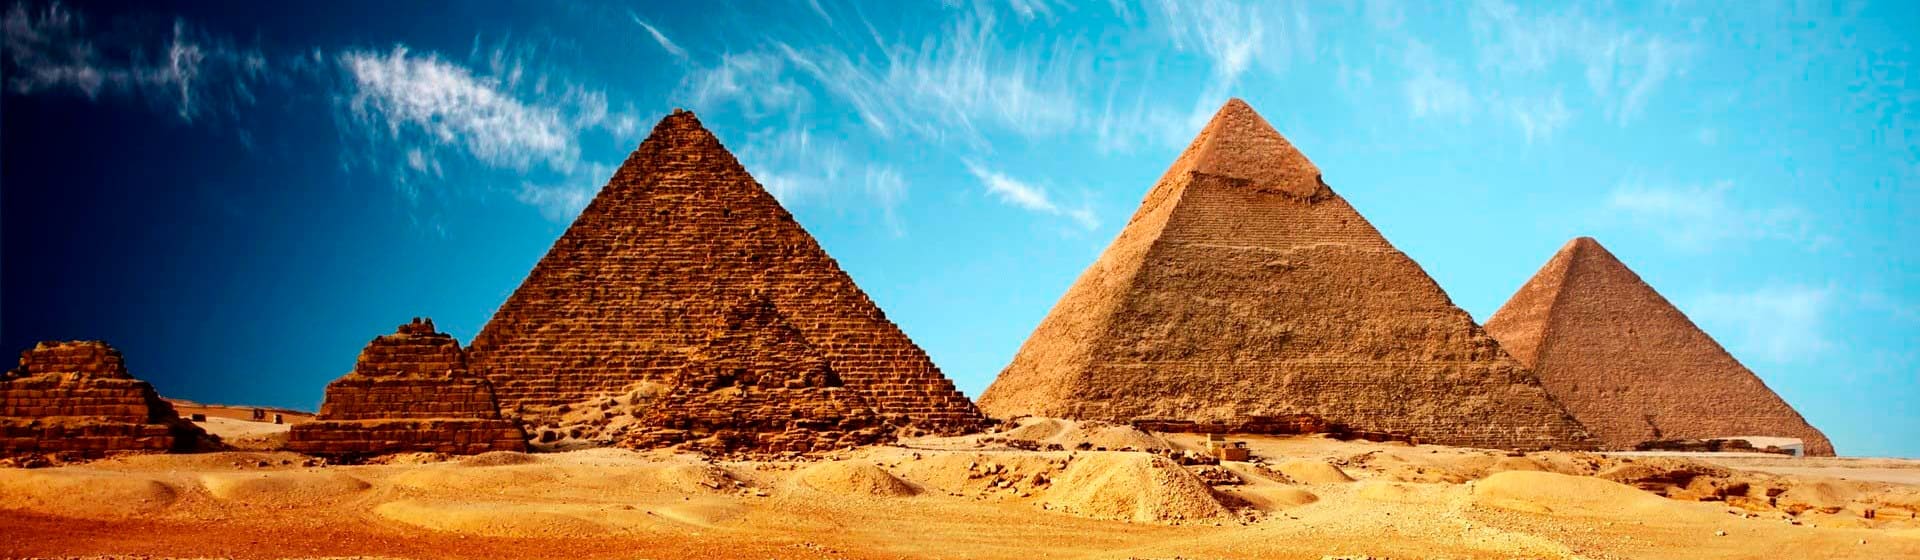 Египет - Мерч и одежда с атрибутикой